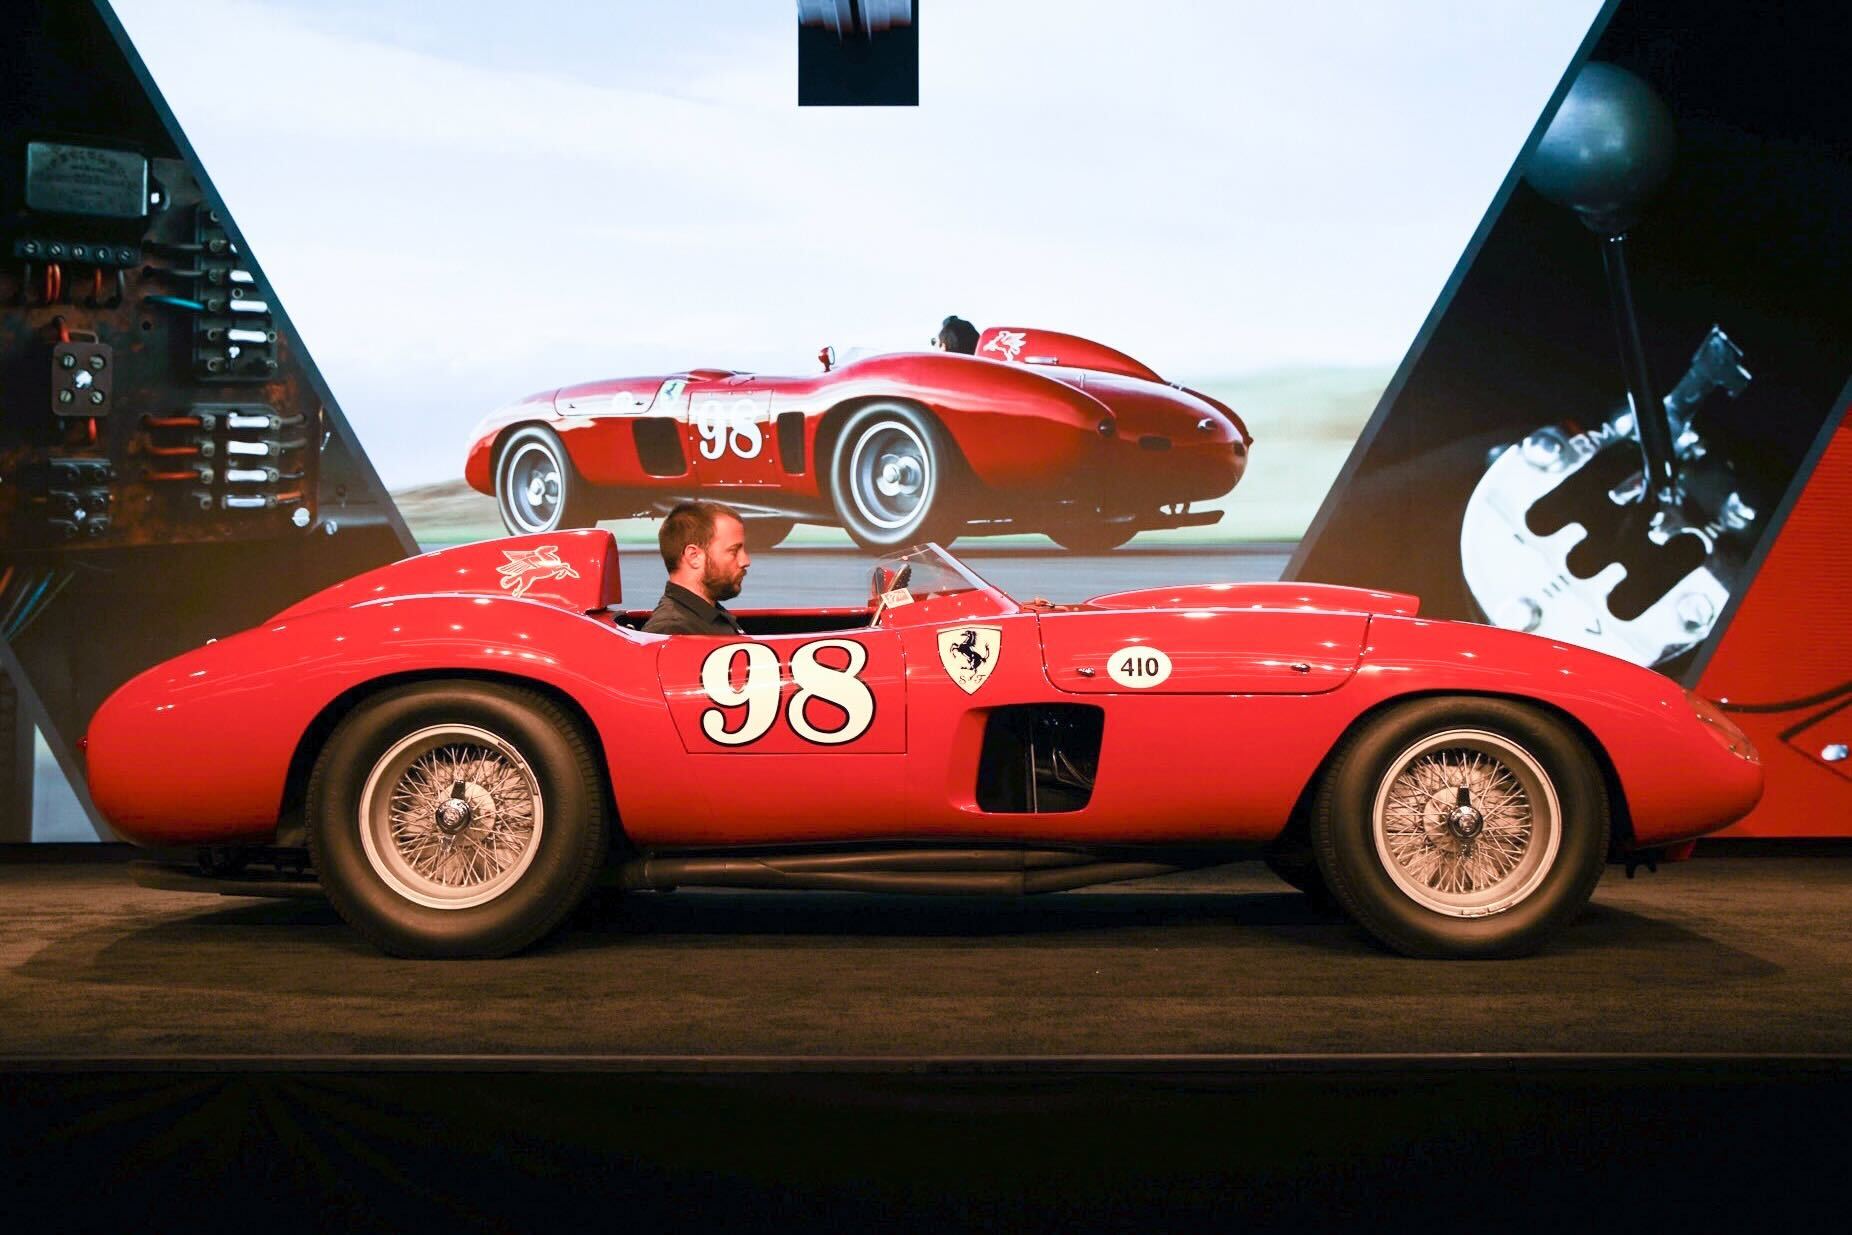 Monterey 2022’s highest sale is this £18.7m Ferrari 410